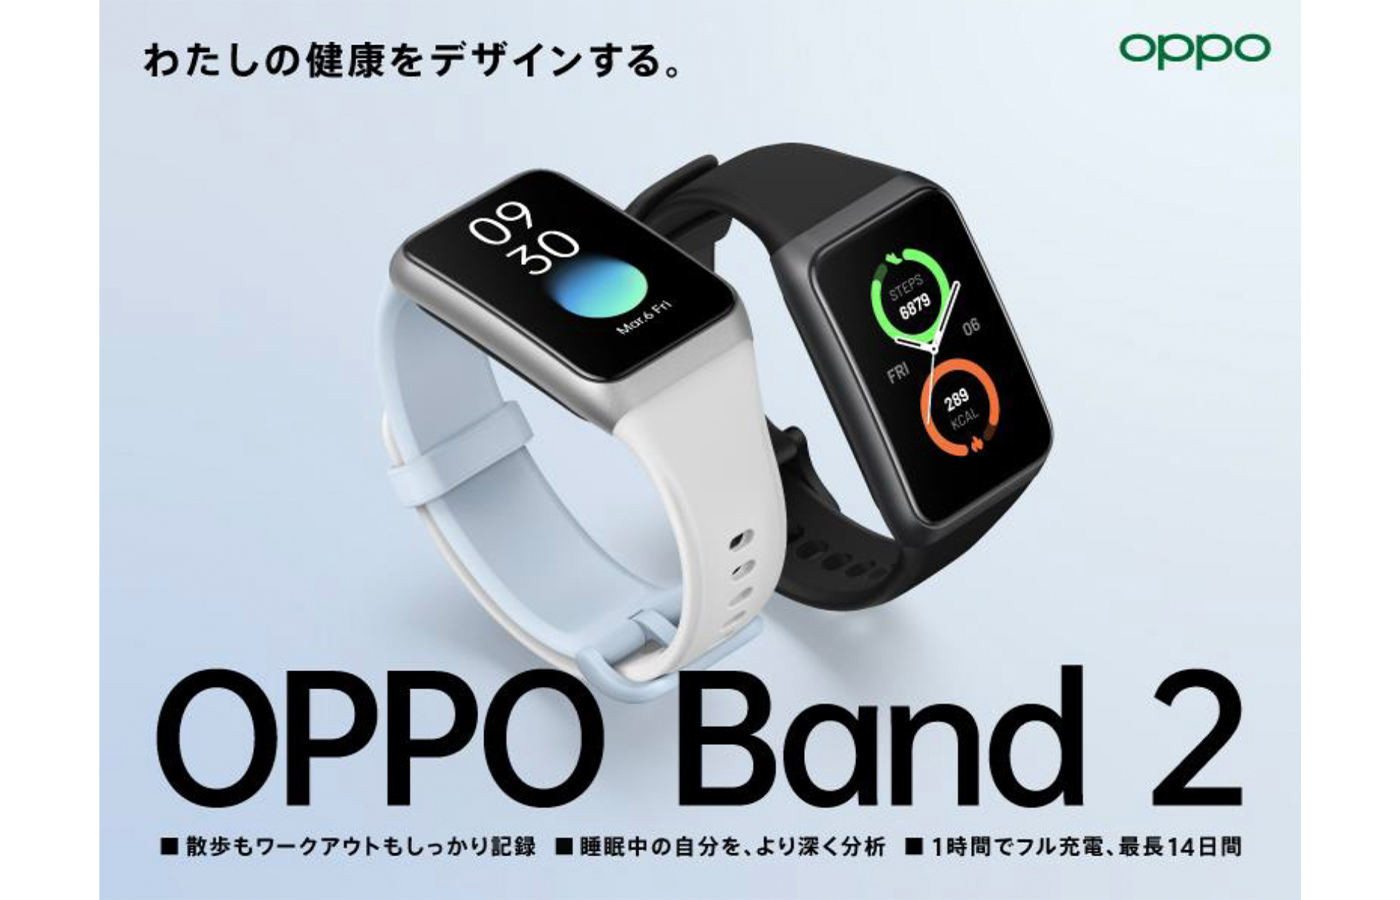 進化した健康サポート機能と急速充電に対応した「OPPO Band 2」の予約受付開始、1月27日より順次販売